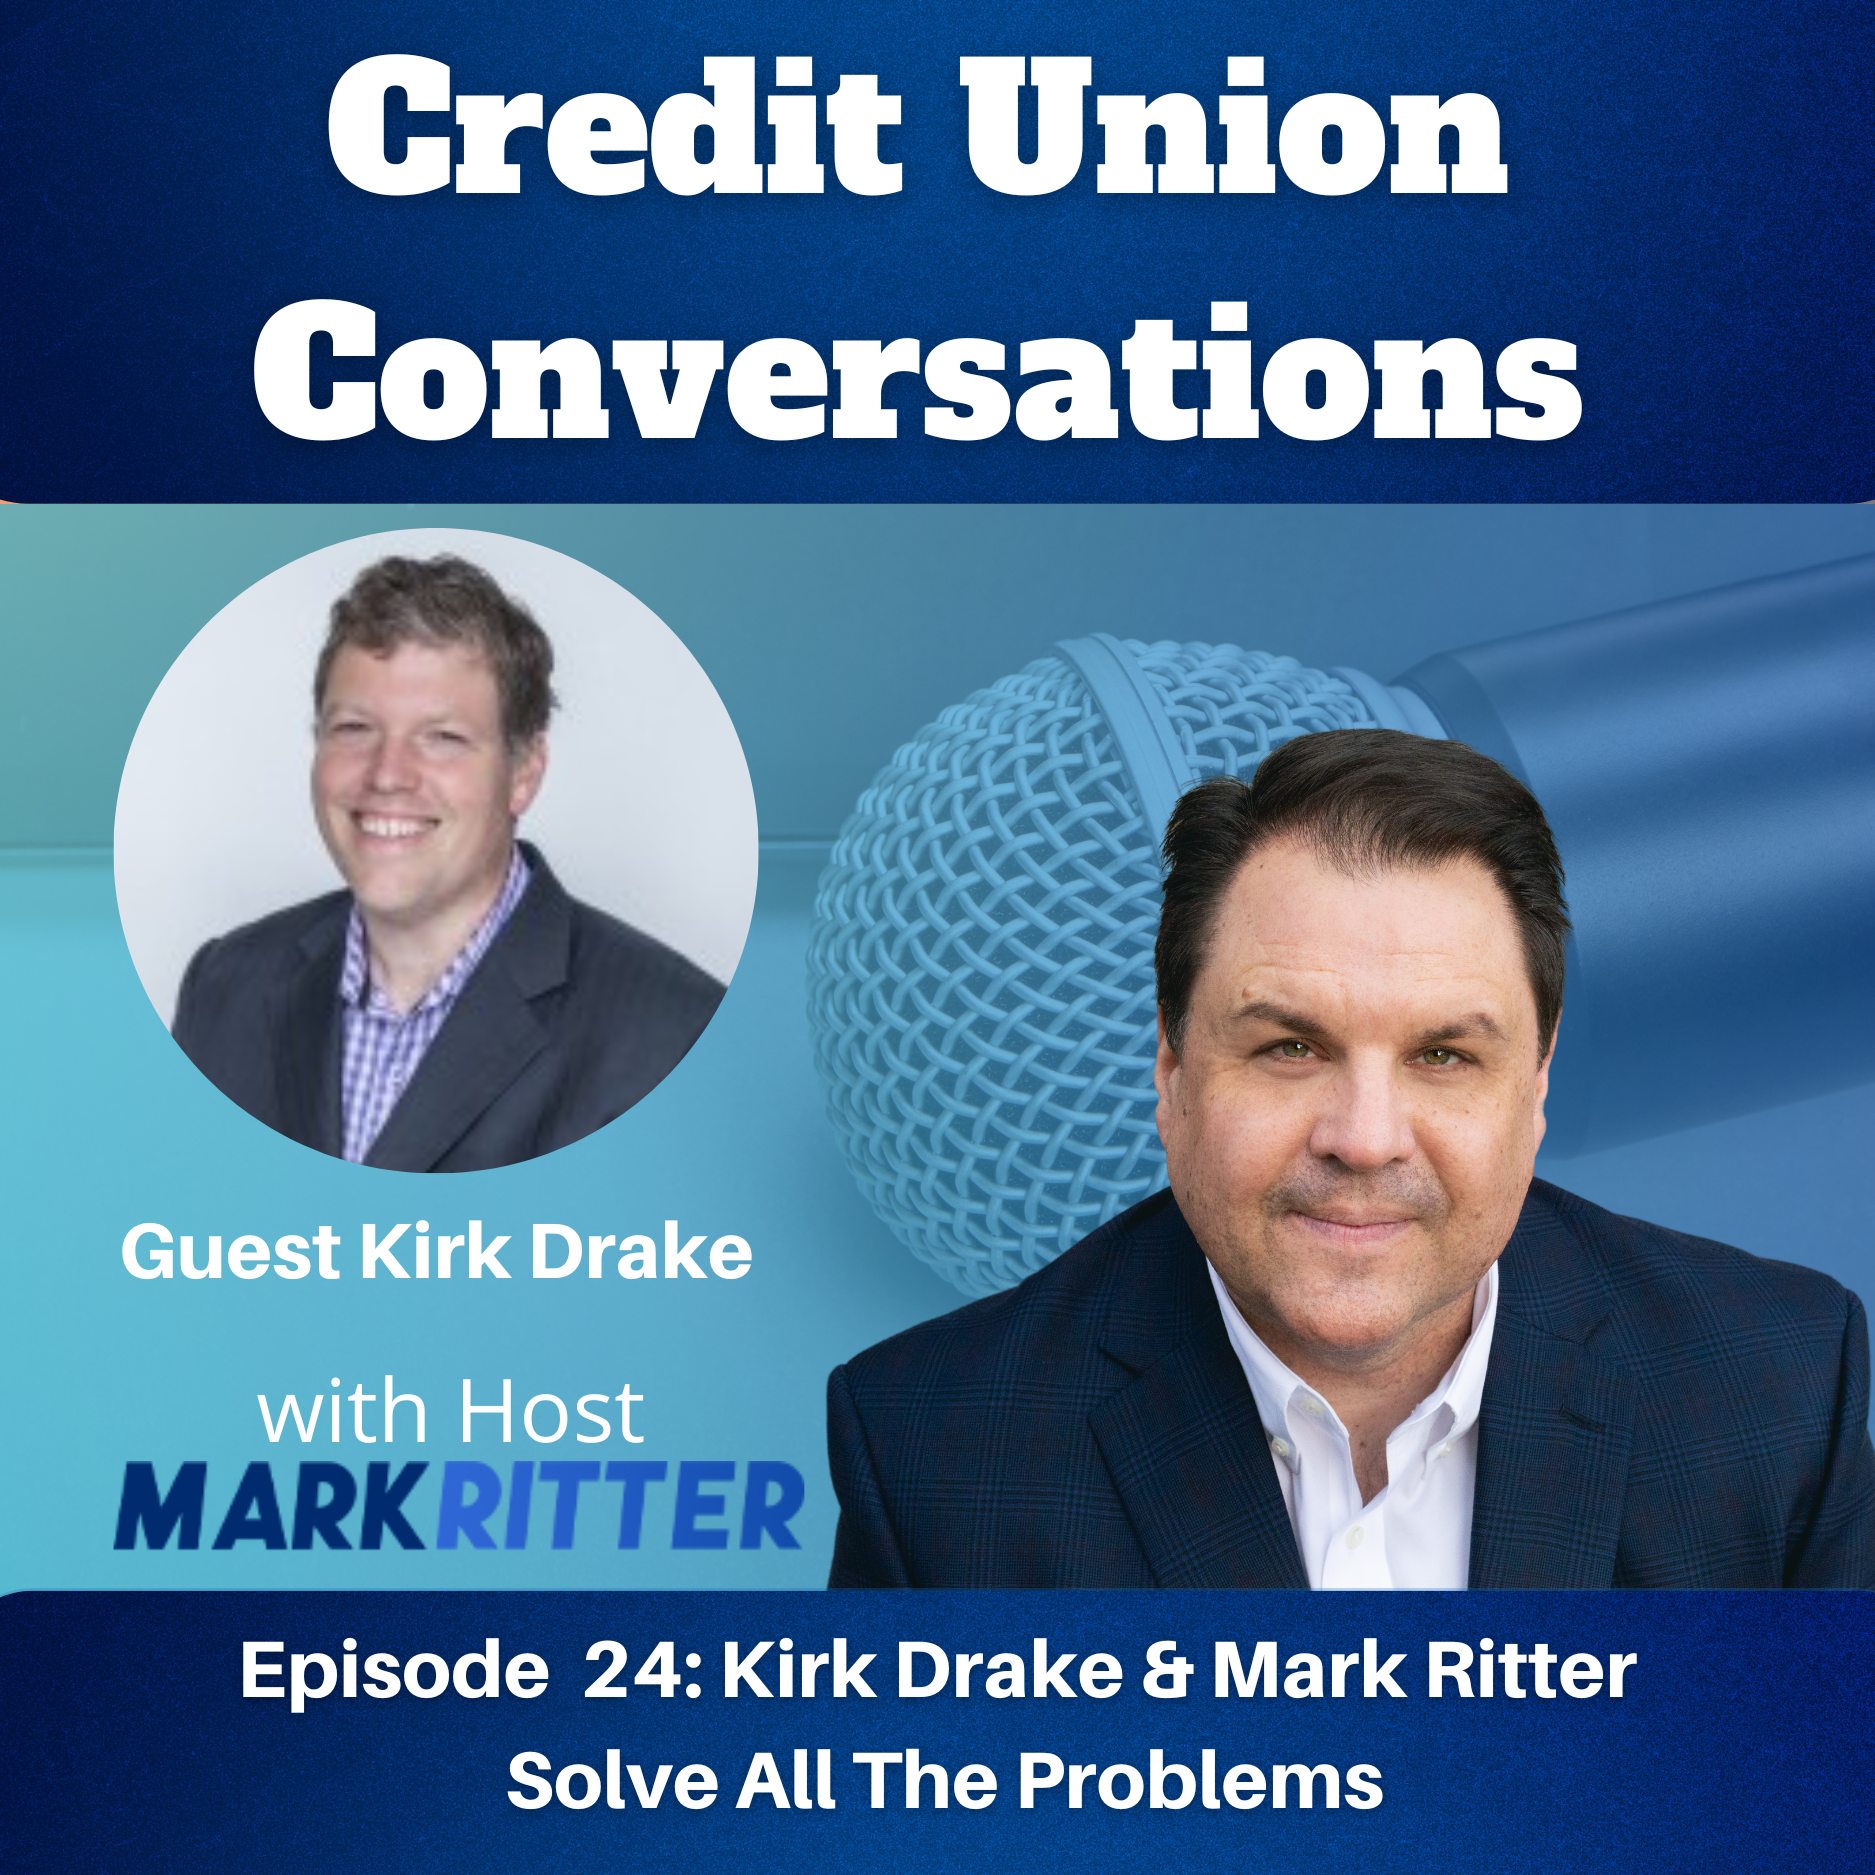 Kirk Drake & Mark Ritter Solve All The Problems